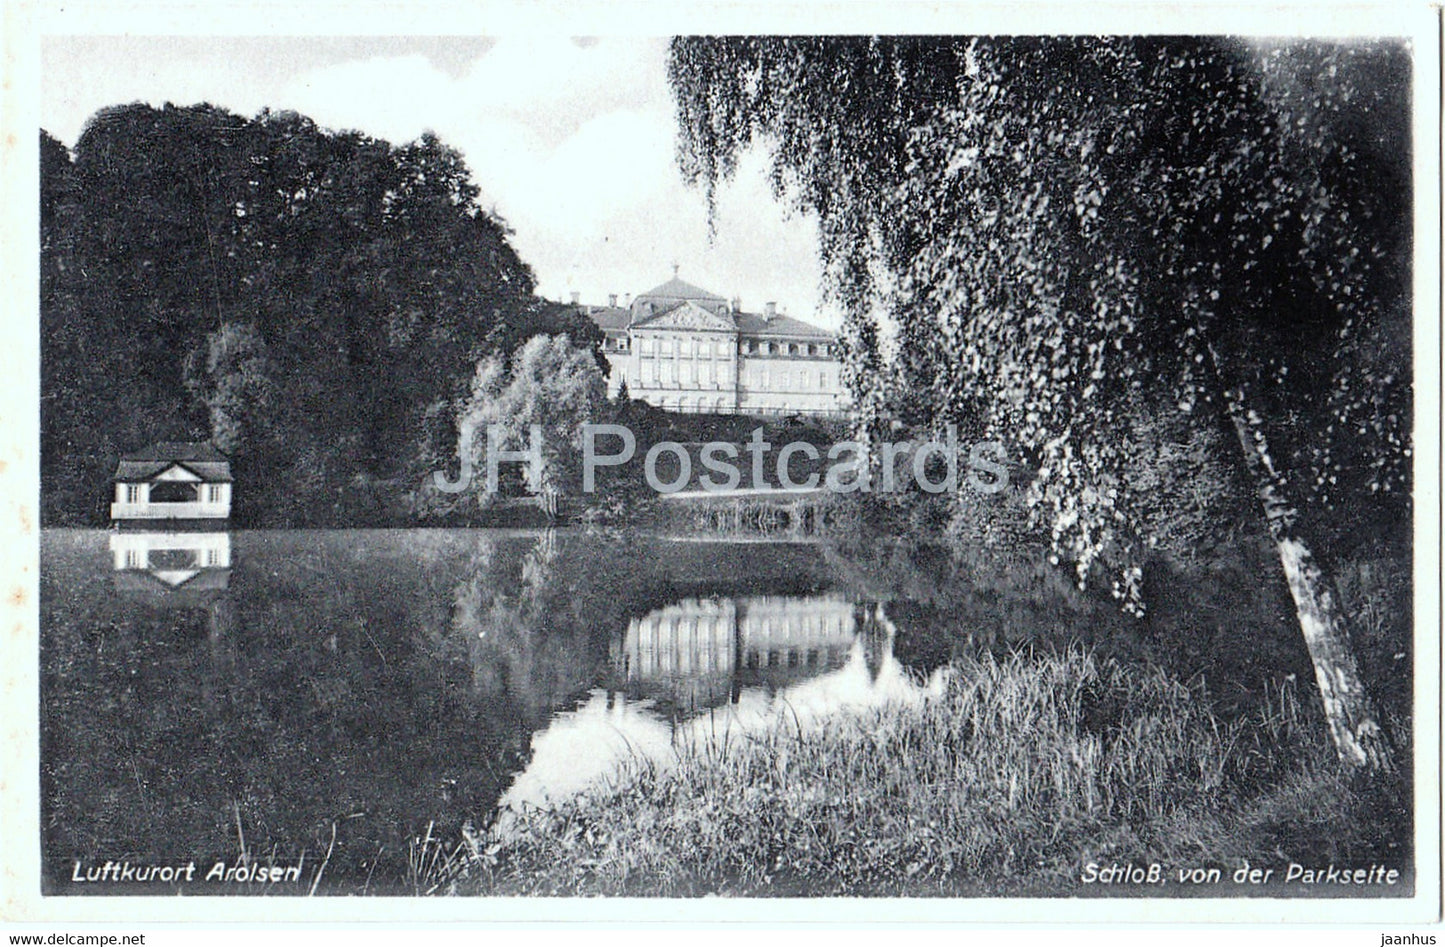 Luftkurort Arolsen - Schloss von der Parkseite - castle - Germany - unused - JH Postcards